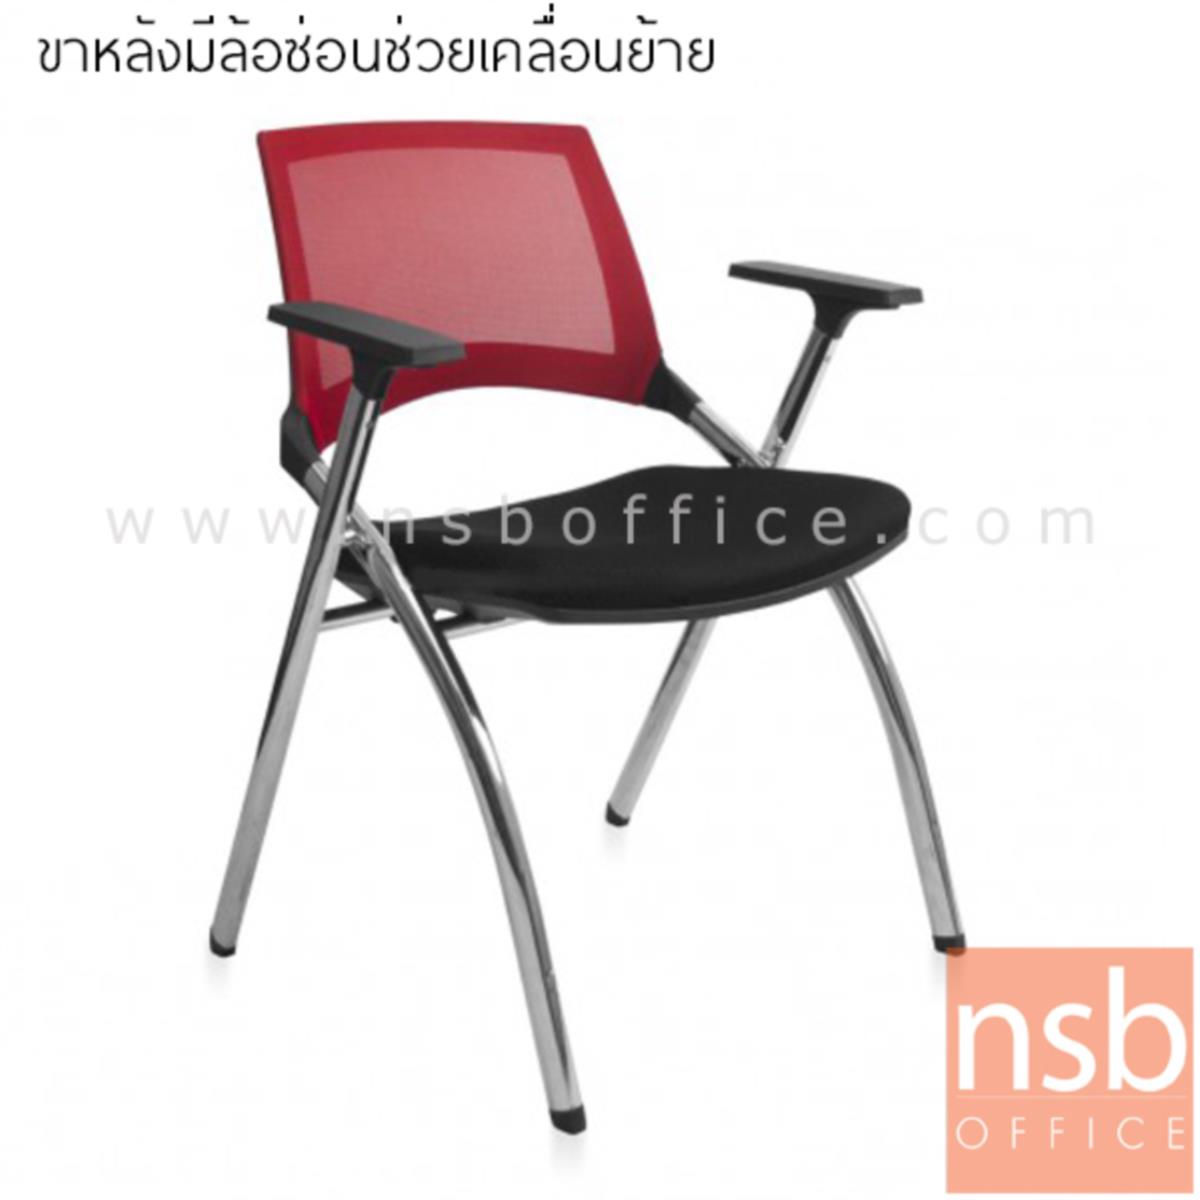 B04A158:เก้าอี้รับแขกหลังเน็ต รุ่น TY-7MD  ขาเหล็กชุบโครเมี่ยม ล้อซ่อนที่ขาหลัง